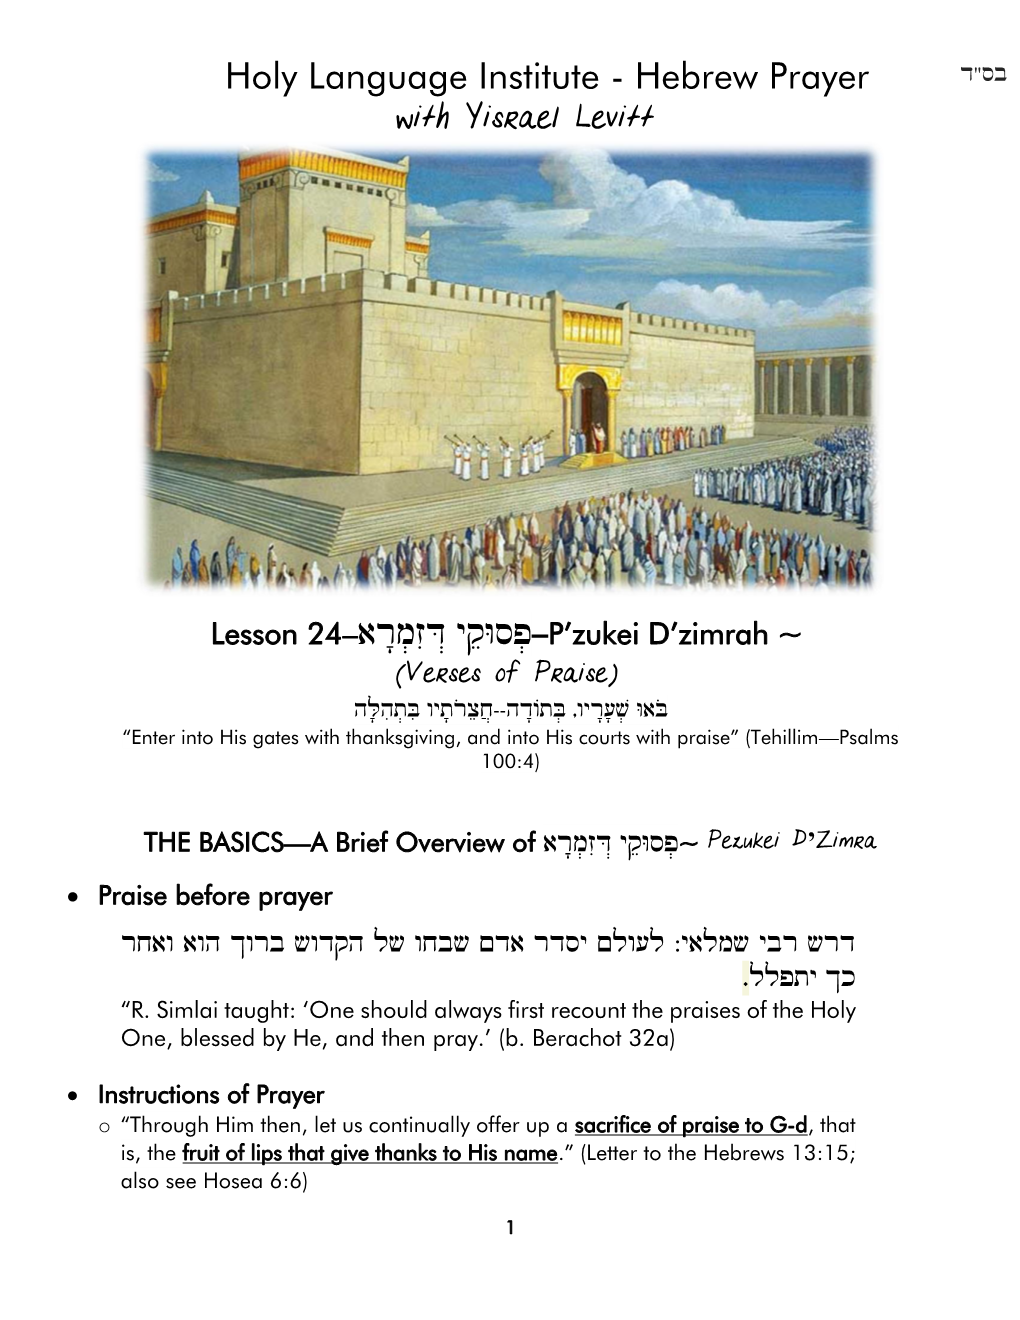 Holy Language Institute - Hebrew Prayer with Yisrael Levitt